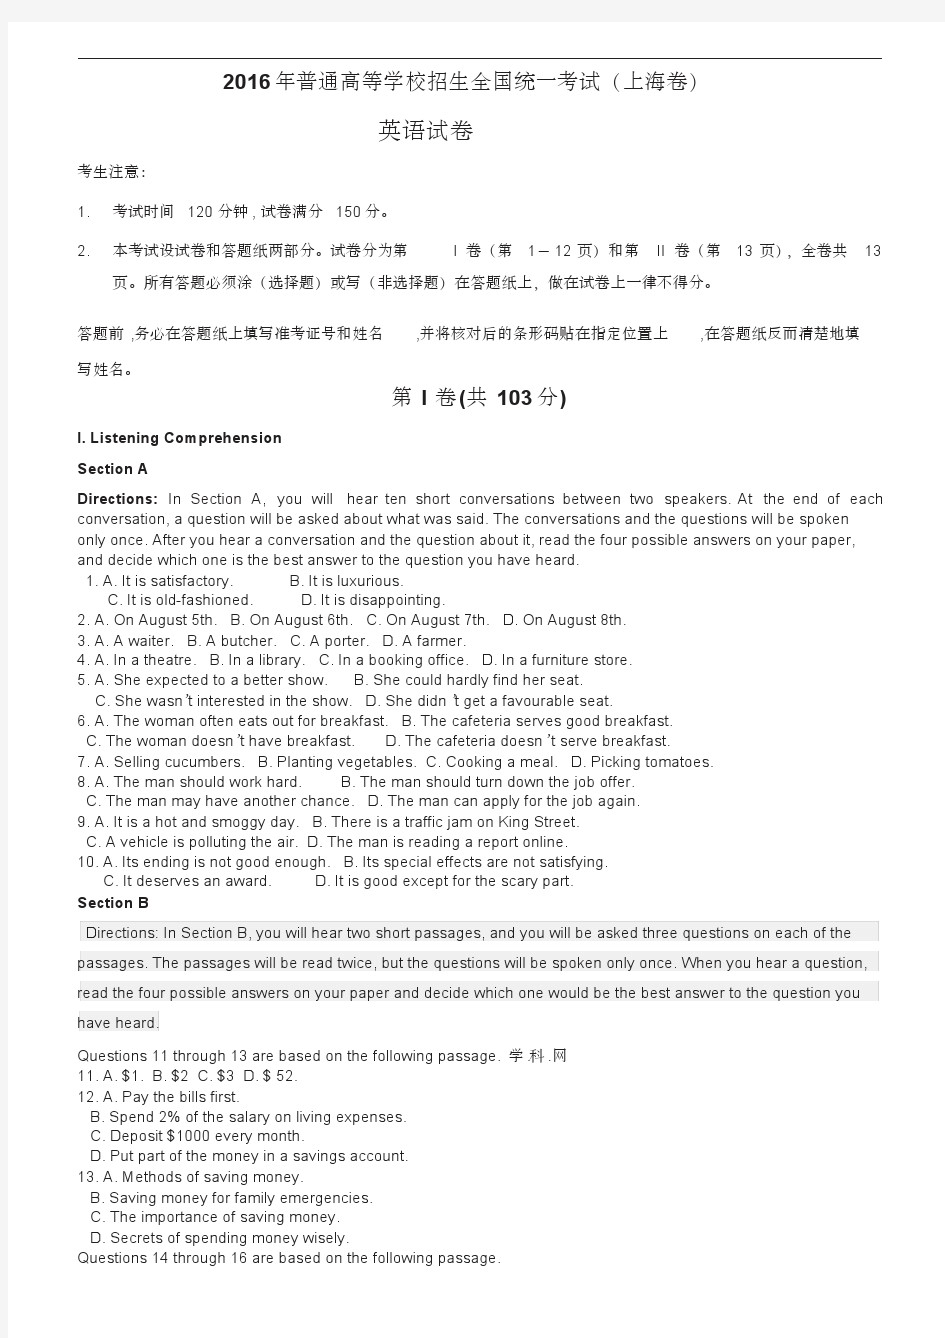 2016年上海高考英语真题卷-上海英语高考卷真题